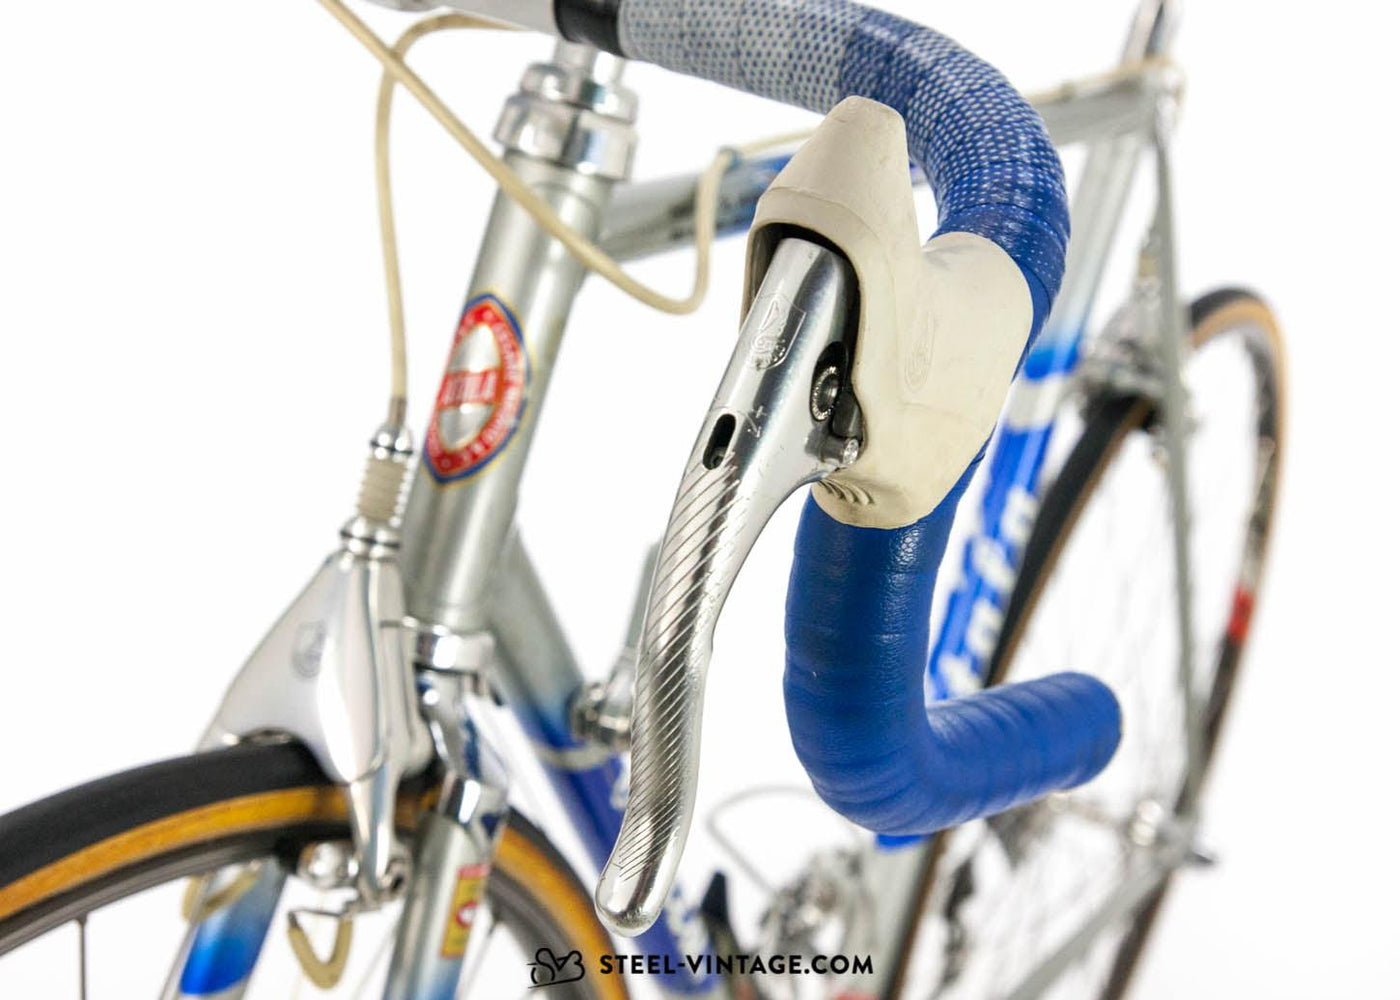 Atala Professionisti SLX Vintage Road Bike 1980s - Steel Vintage Bikes